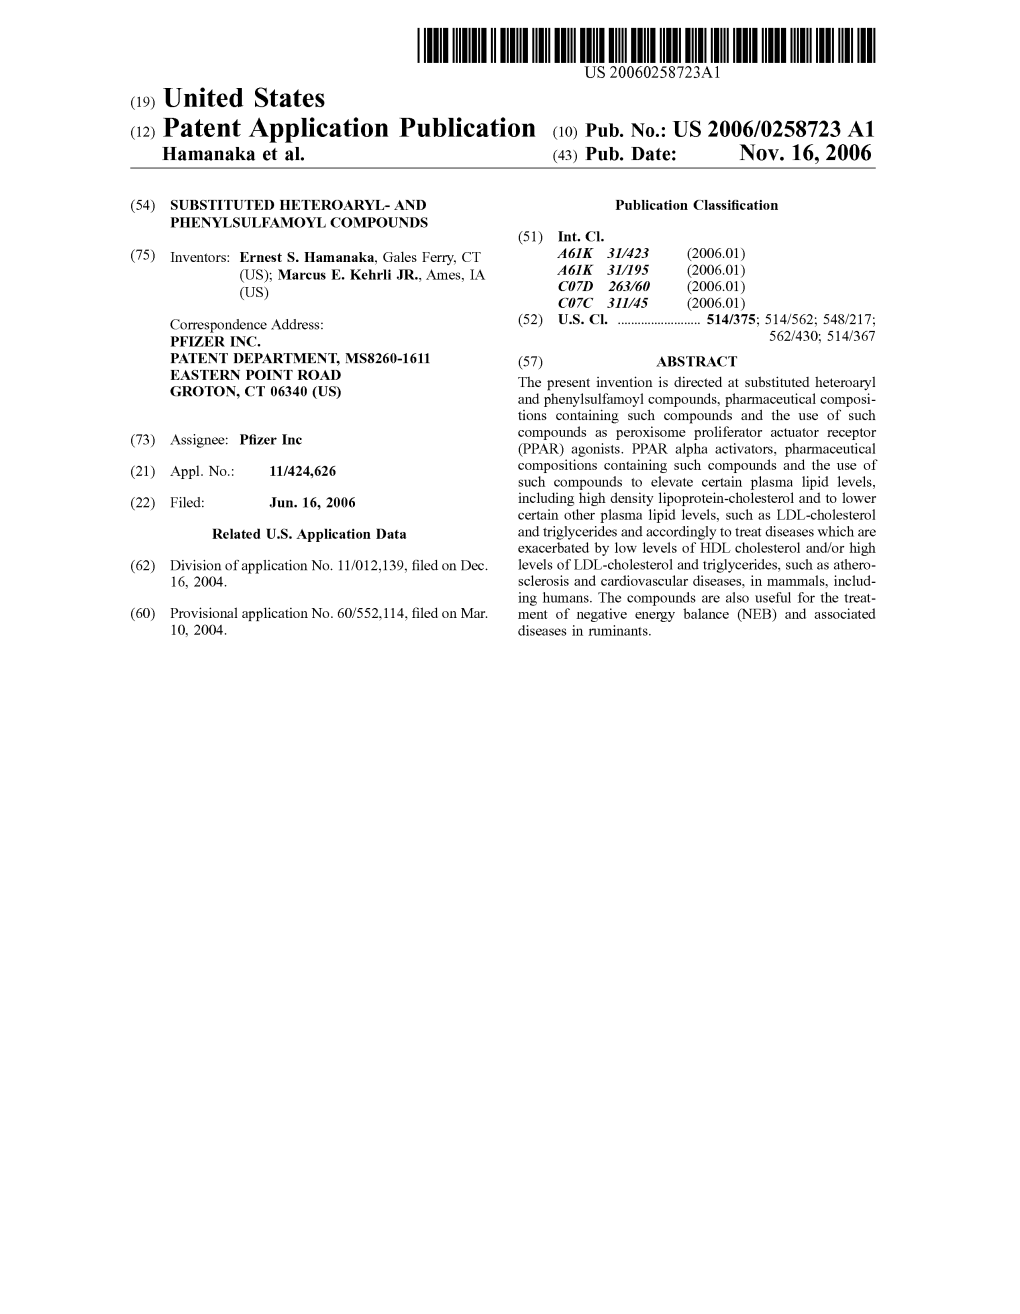 (2) Patent Application Publication (10) Pub. No.: US 2006/0258723 A1 Hamanaka Et Al